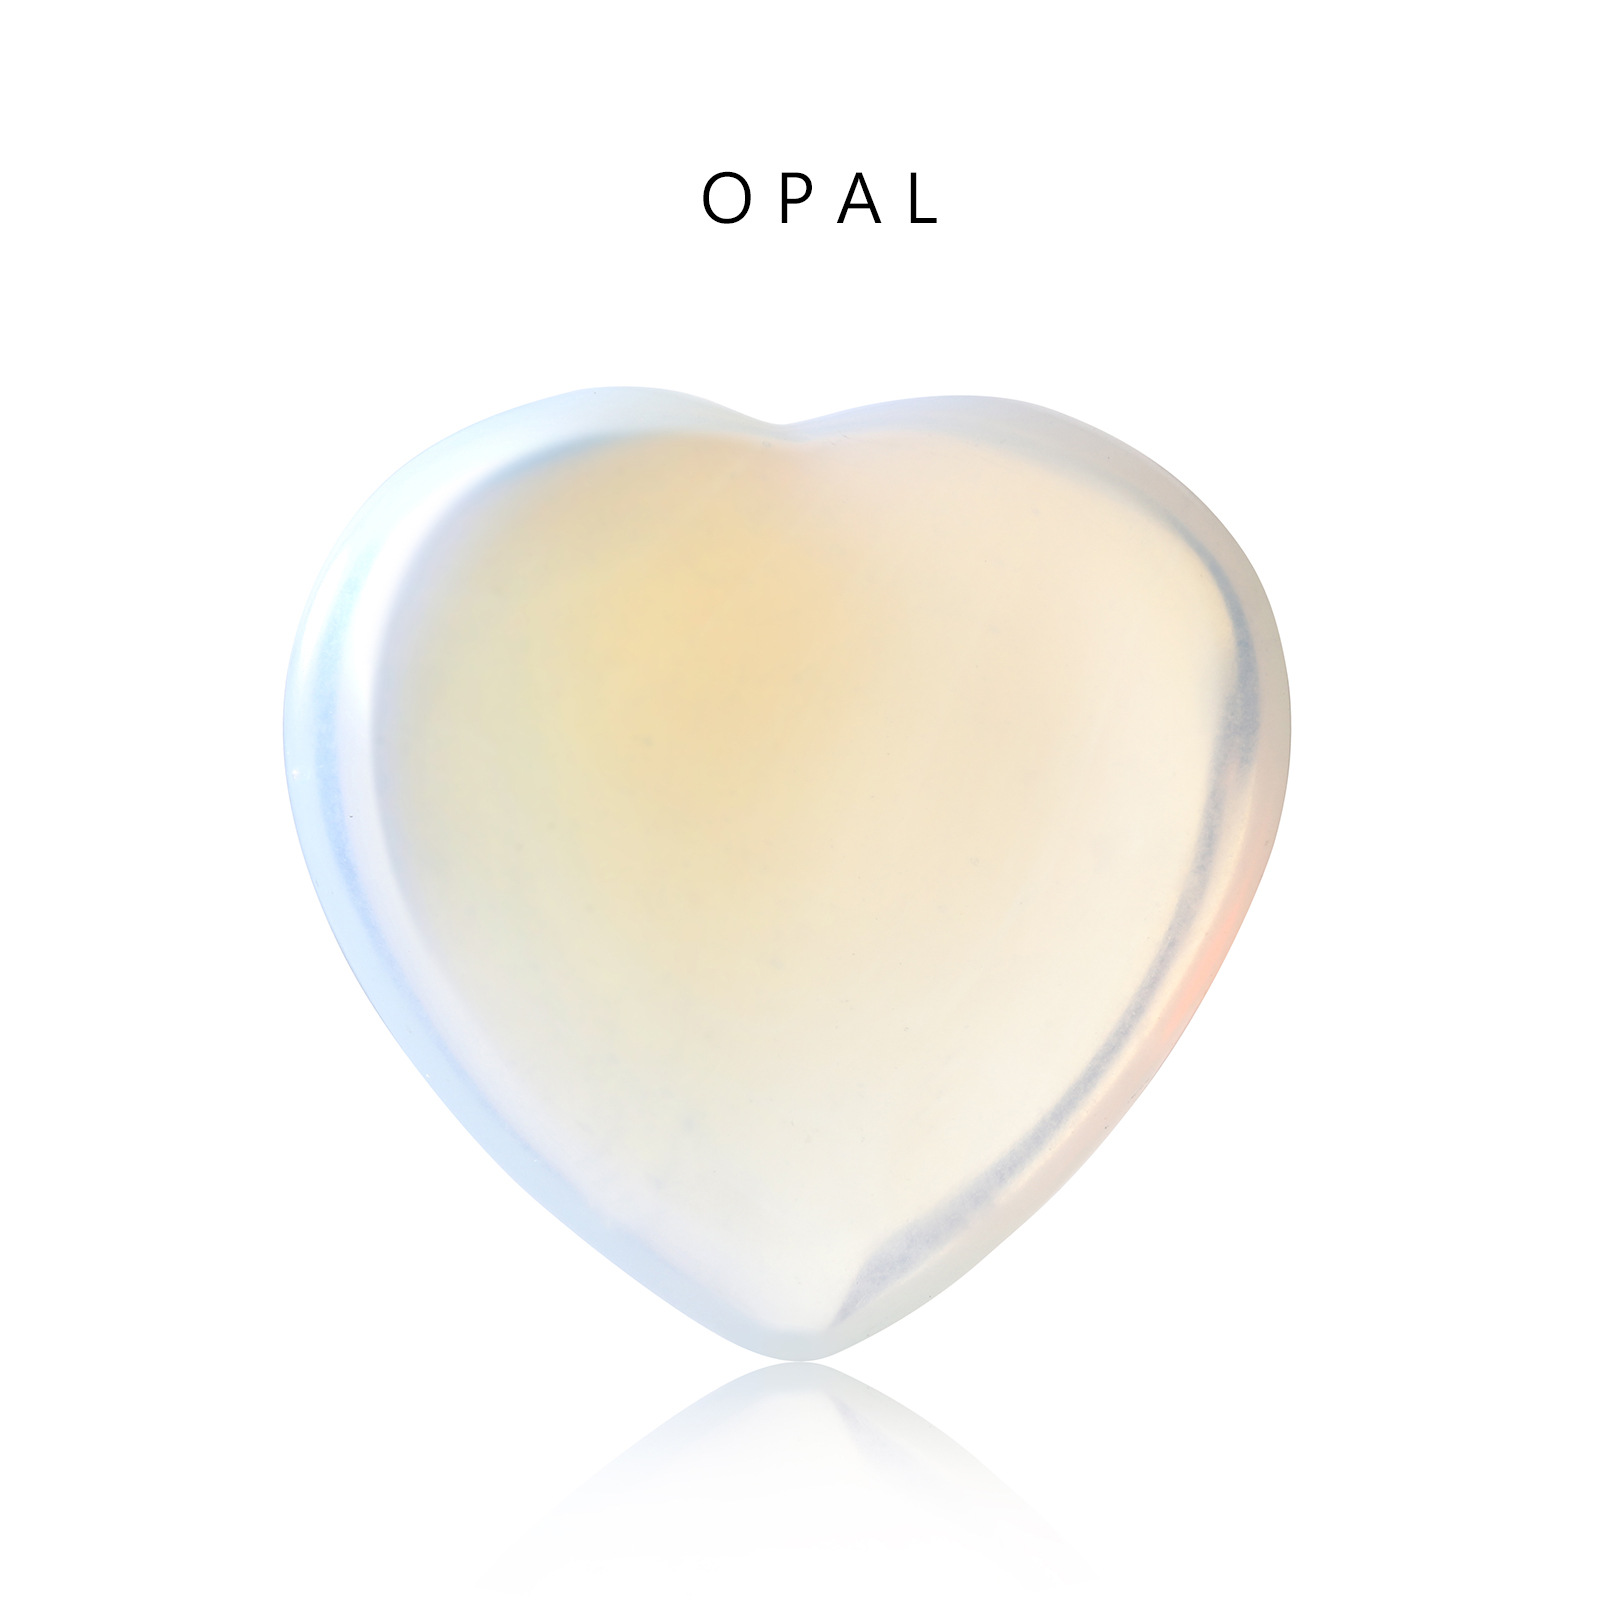 21:hav opal